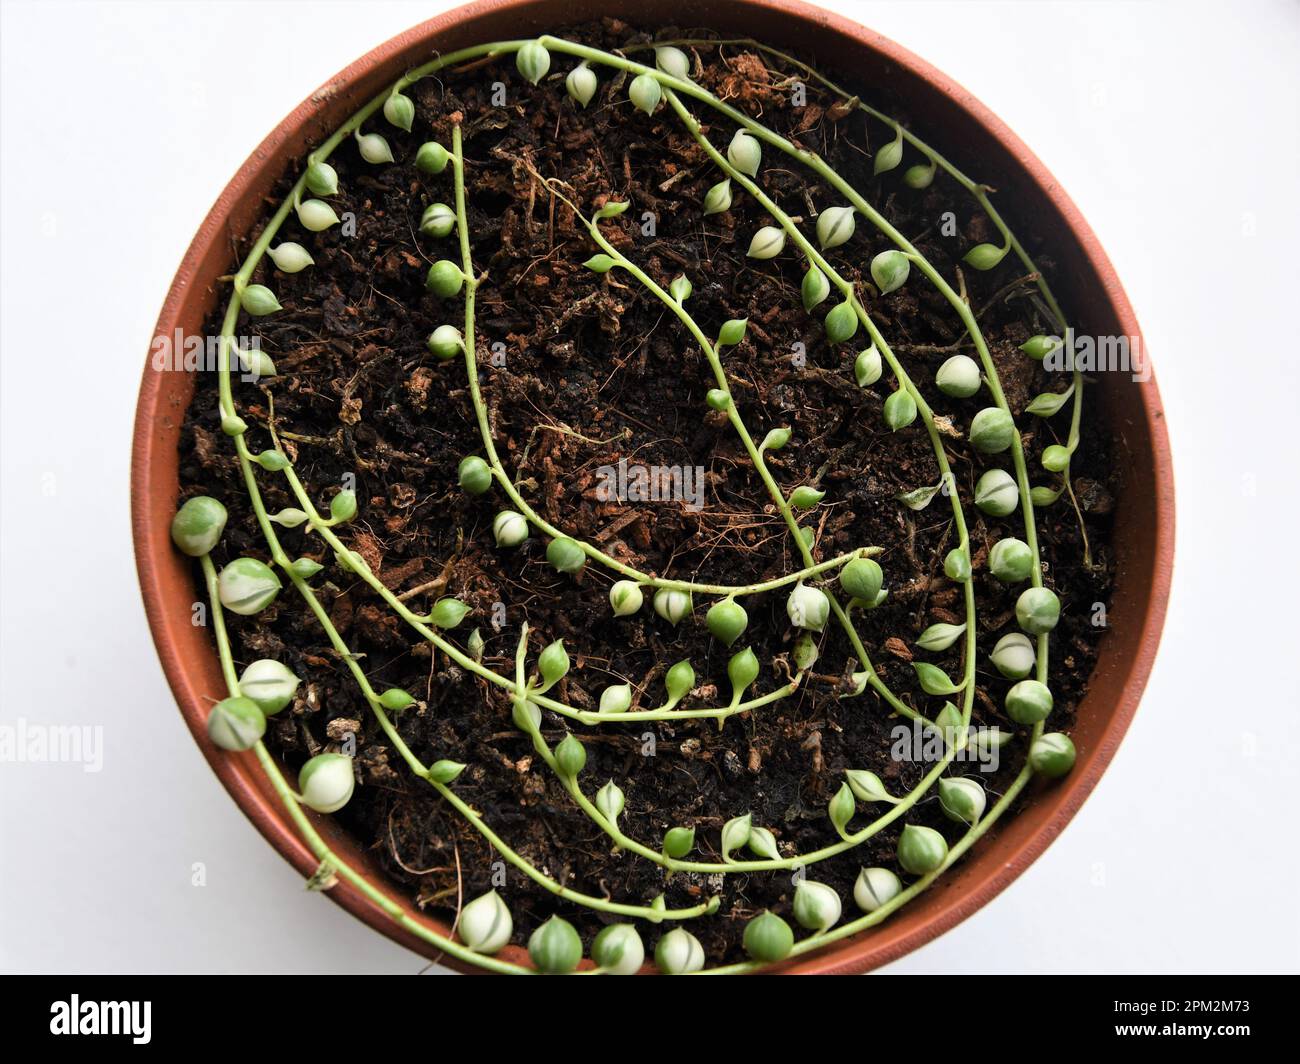 Senecio rowleyanus variegata, auch bekannt als Perlensaison, die im Boden vermehrt wird. Grün-weiße vining Hauspflanze. Stockfoto